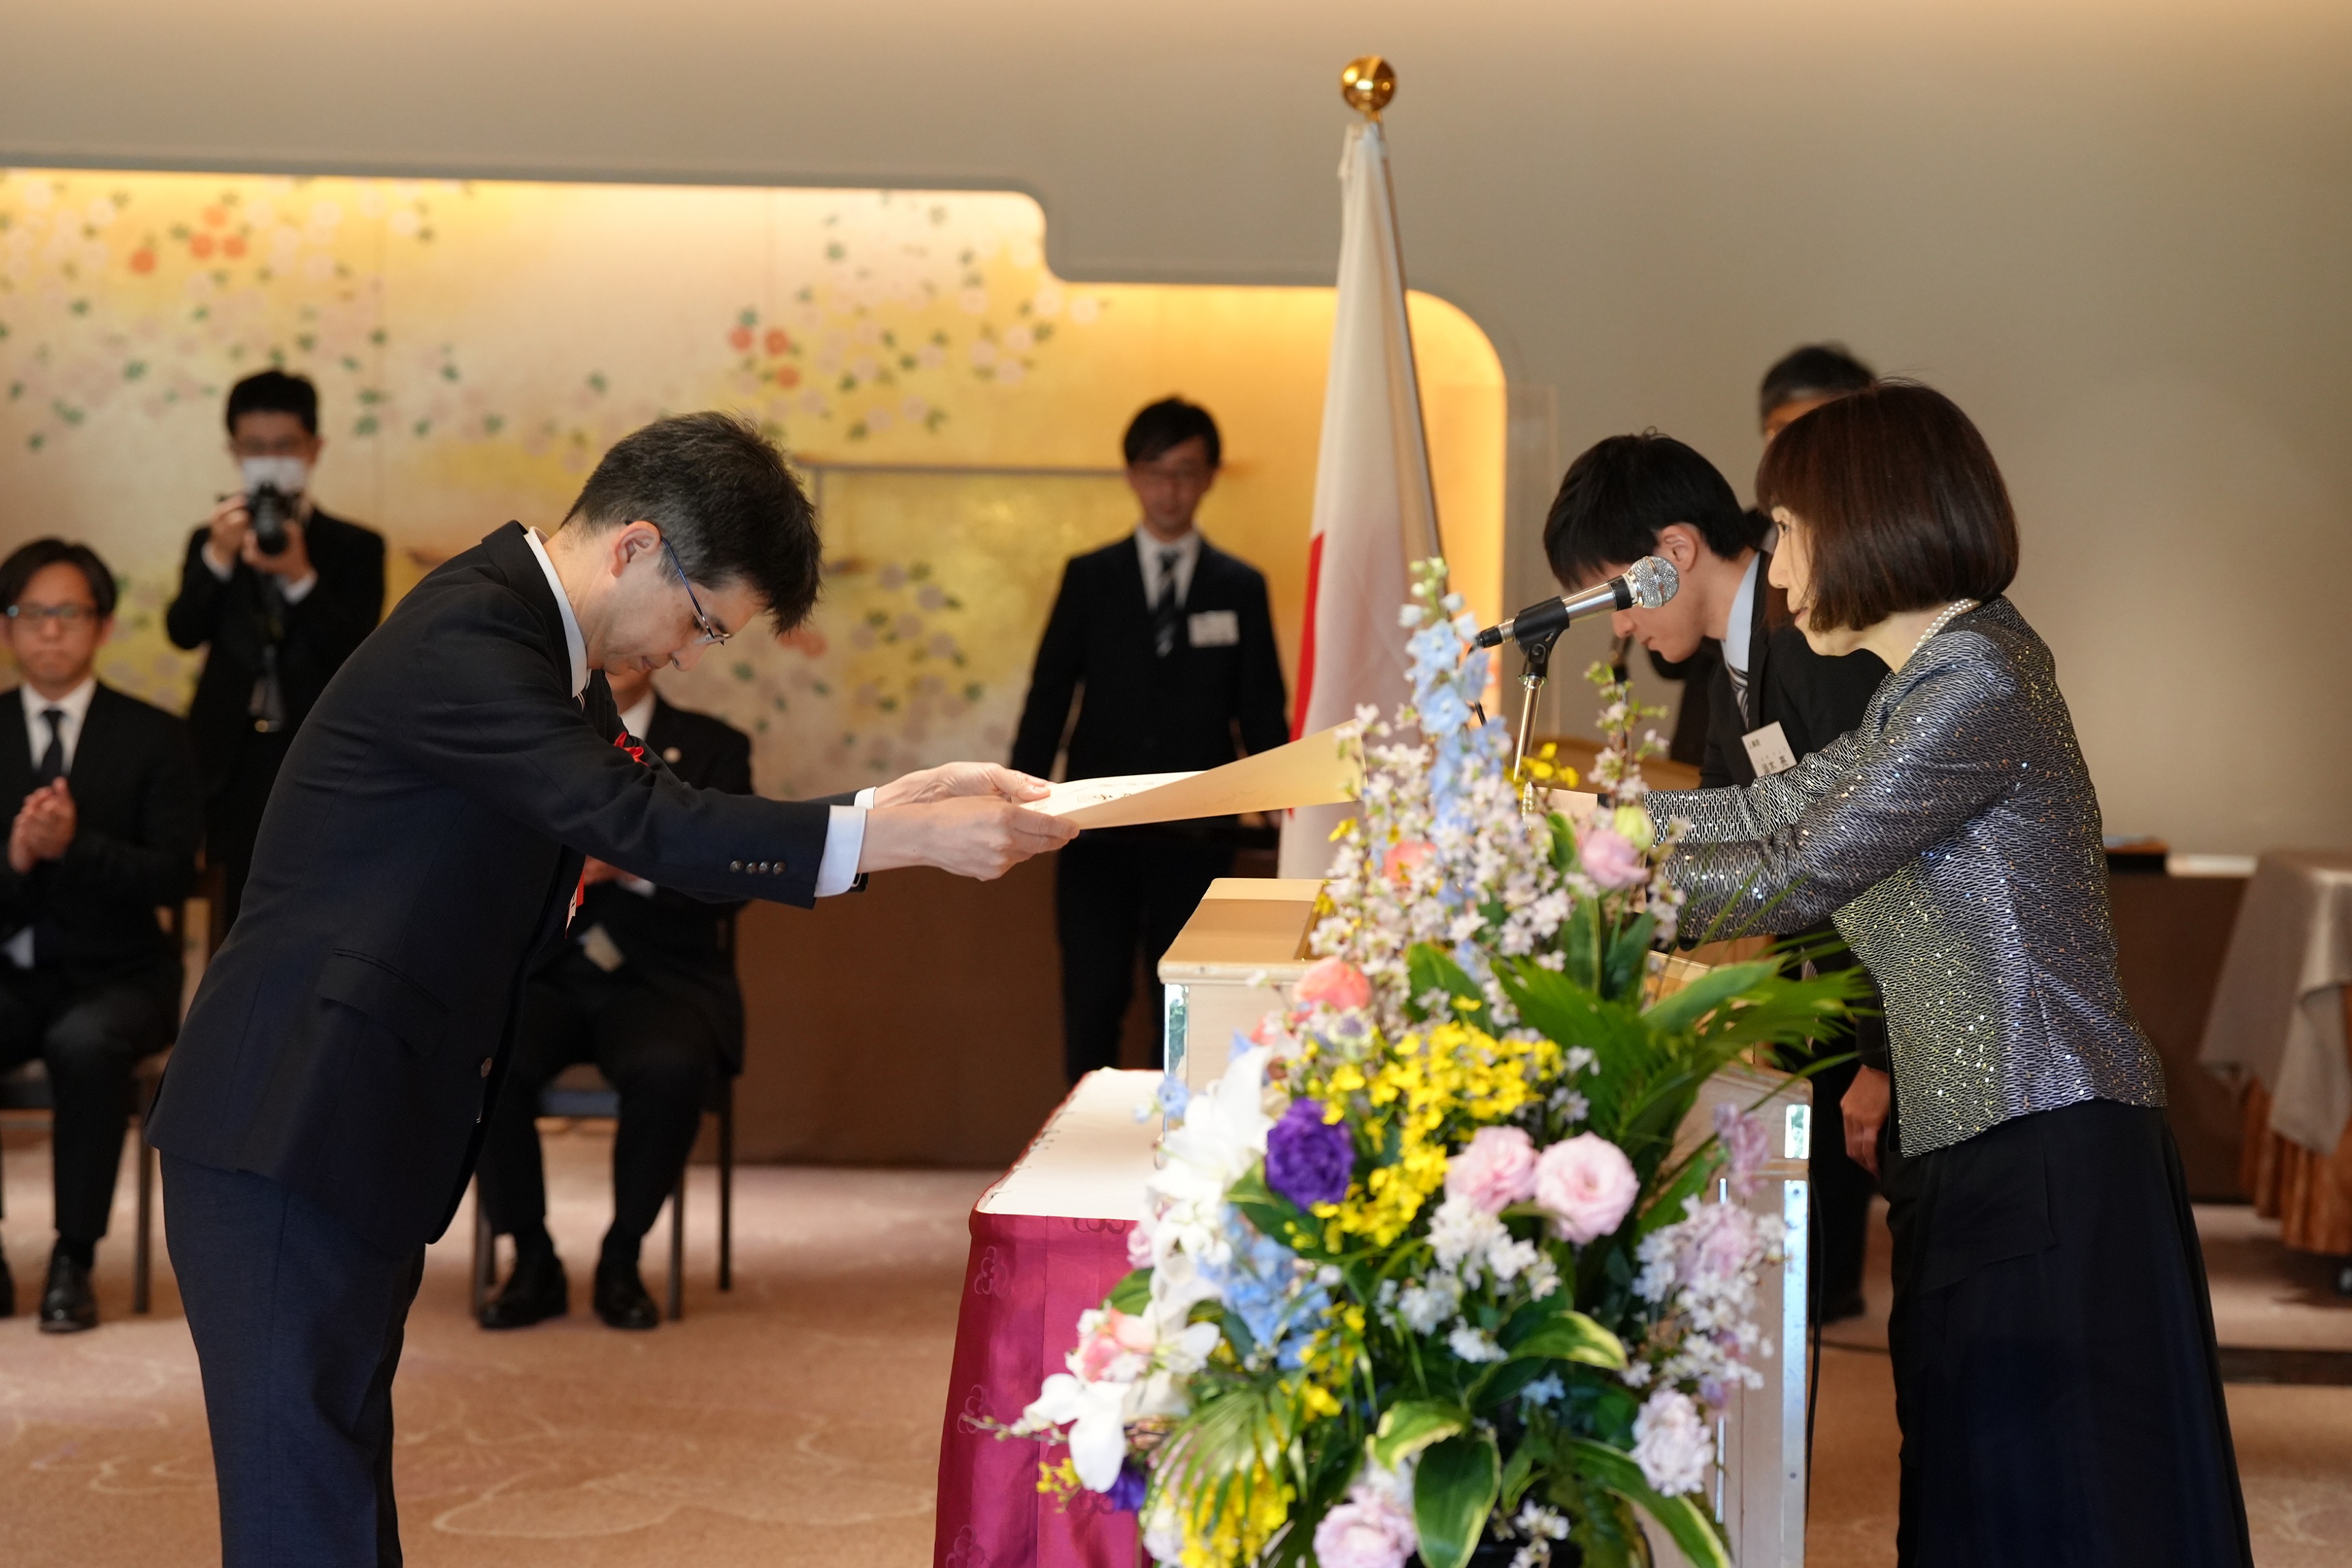 明治記念館にて授与式を行っている風景。デジタル統括官が川本裕子総裁(人事院)より賞状を受け取っている。